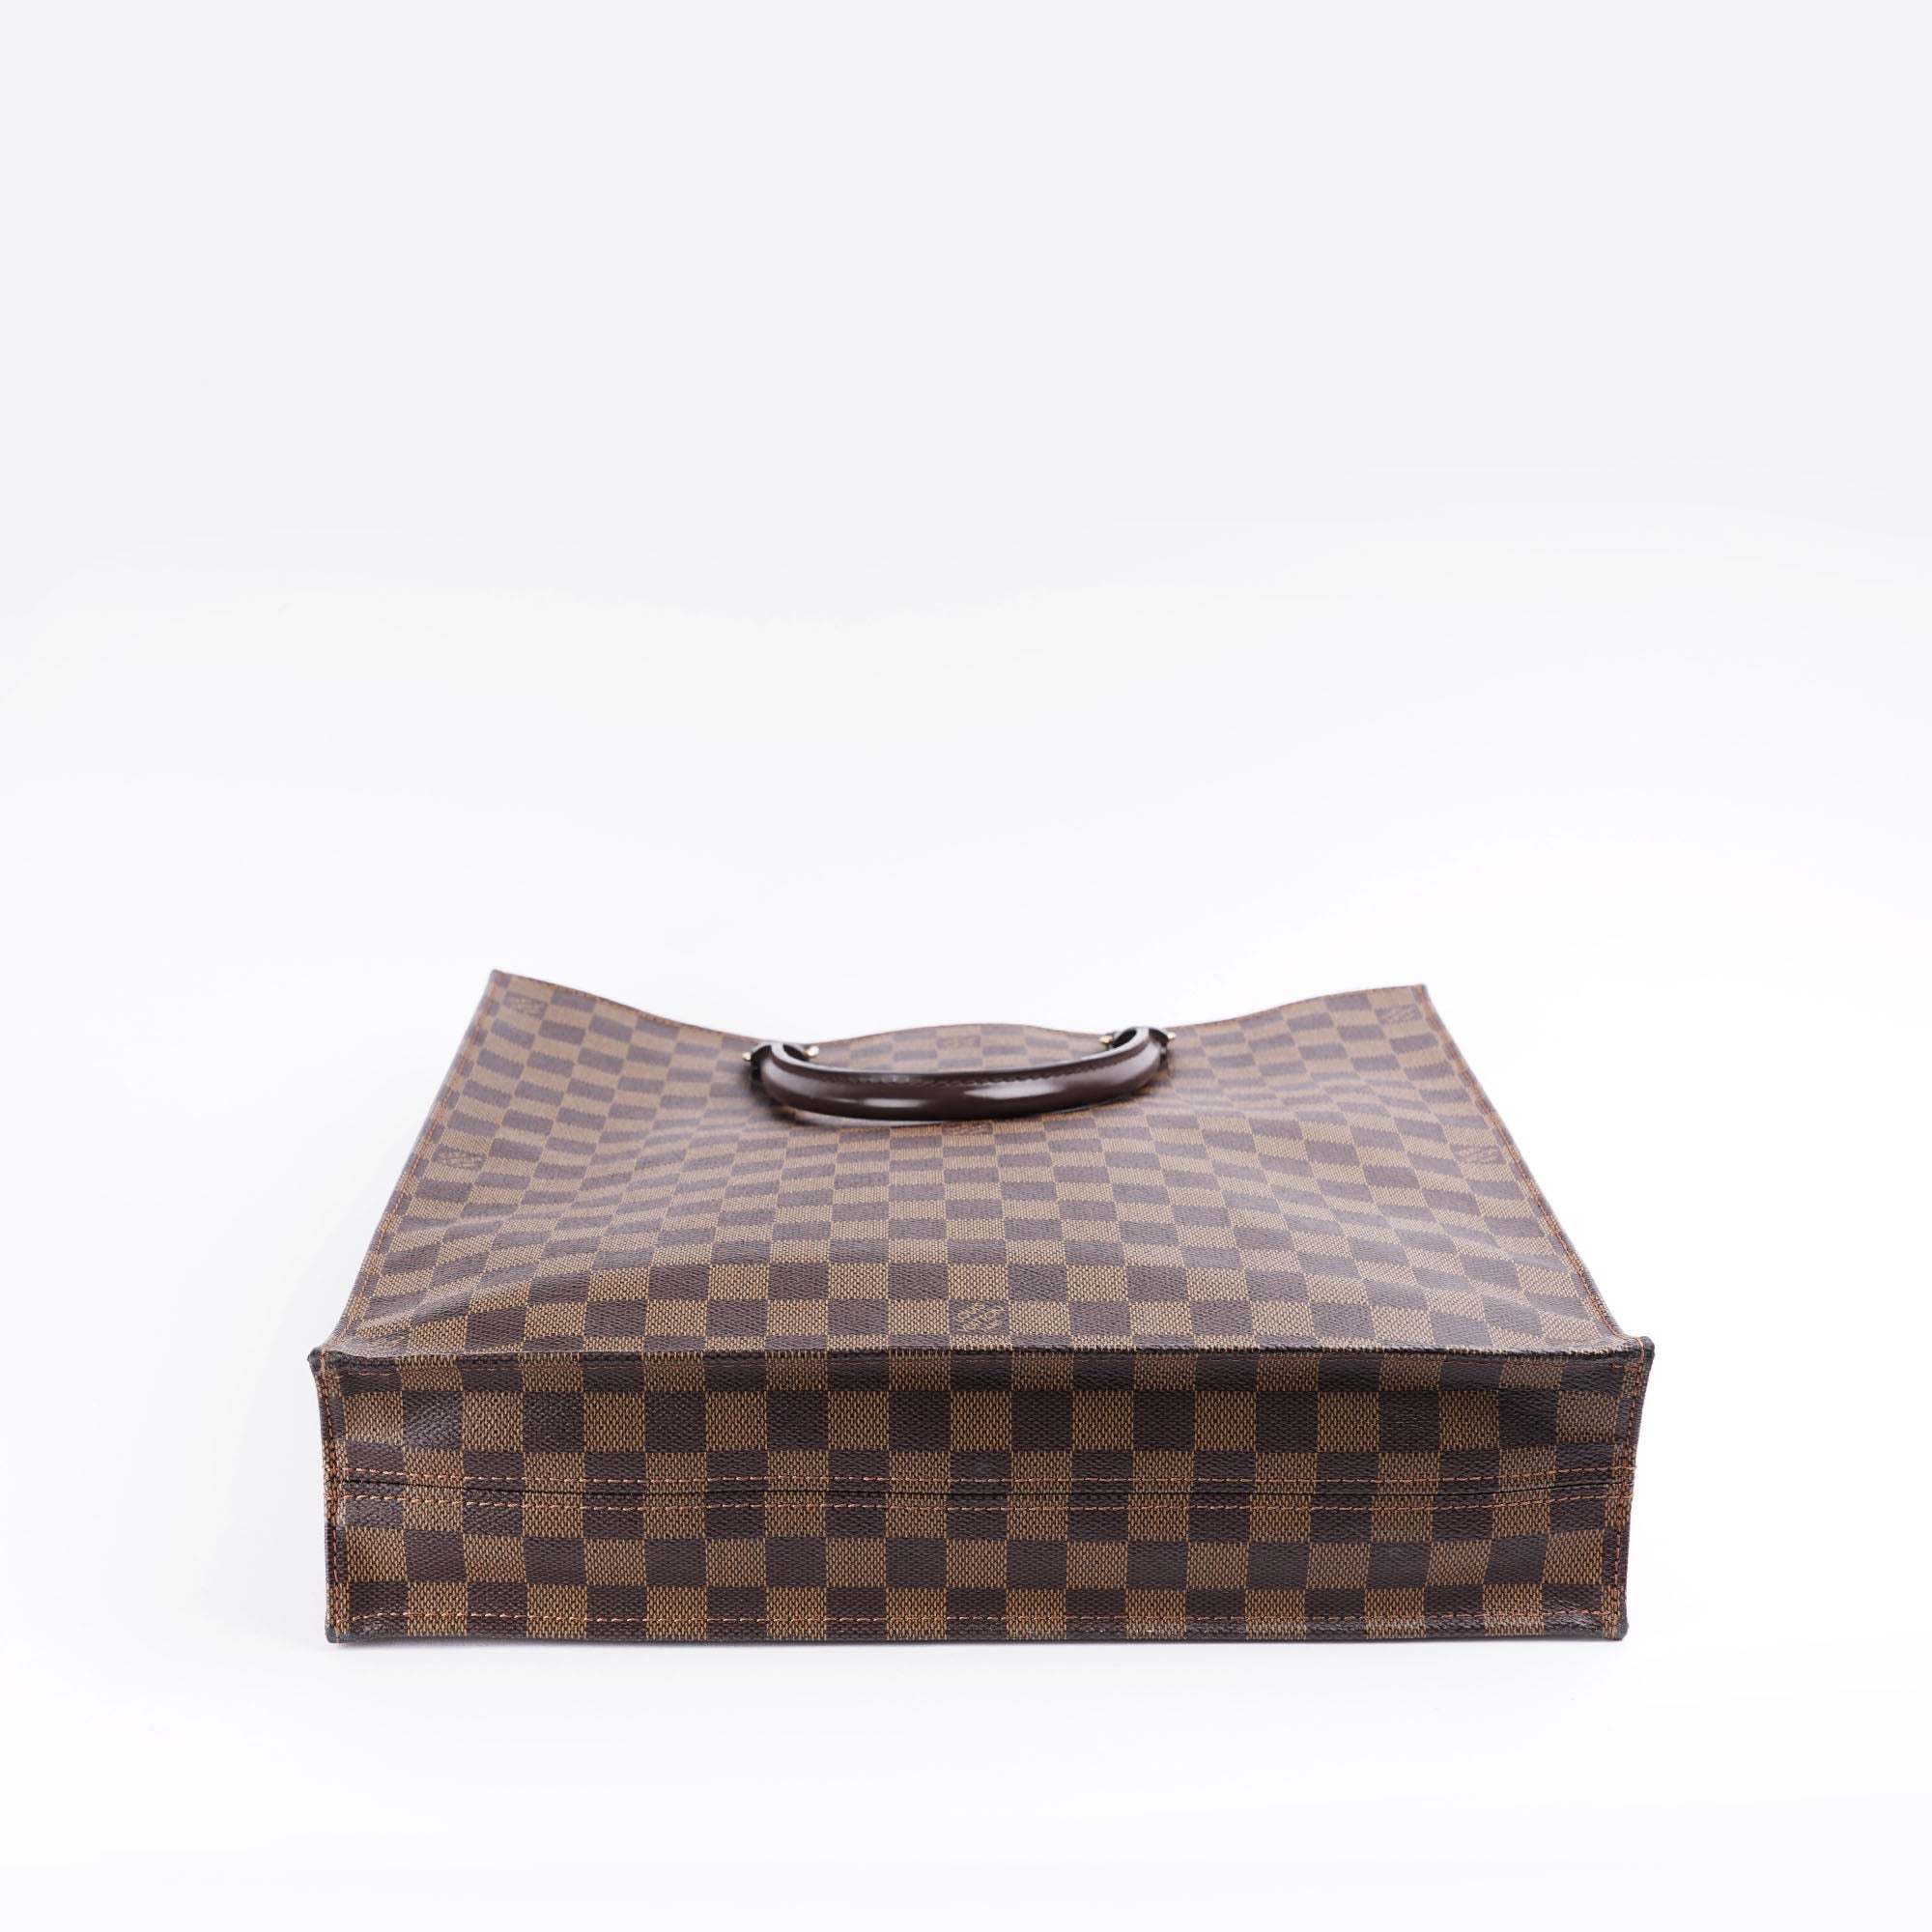 Sac Plat Handbag - LOUIS VUITTON - Affordable Luxury image